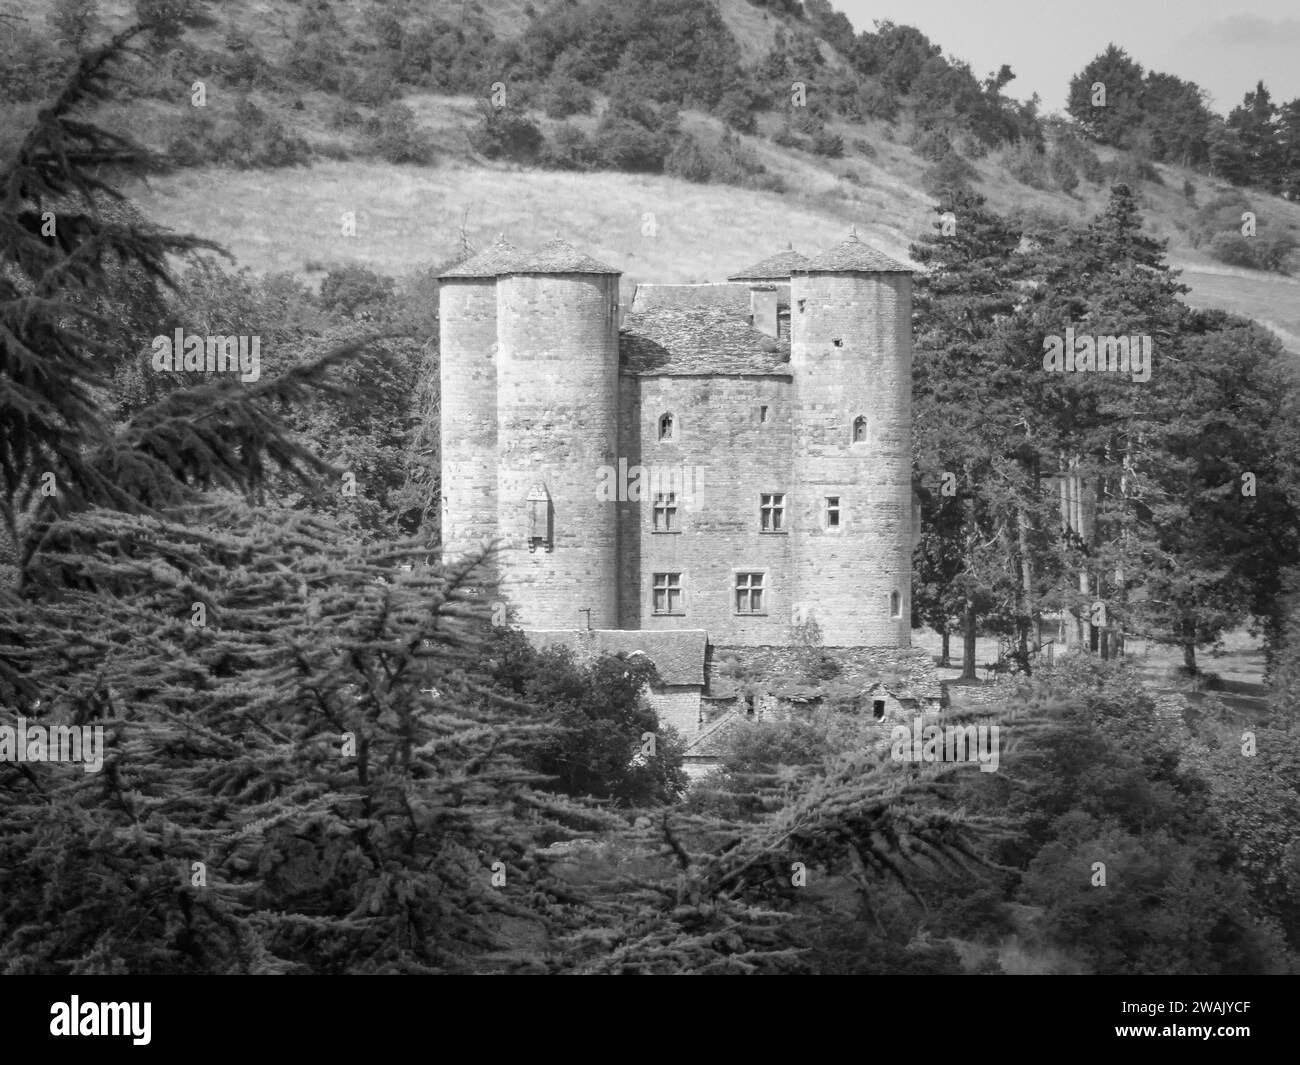 Una fotografía en blanco y negro de un antiguo castillo situado en lo alto de una colina cubierta de hierba Foto de stock